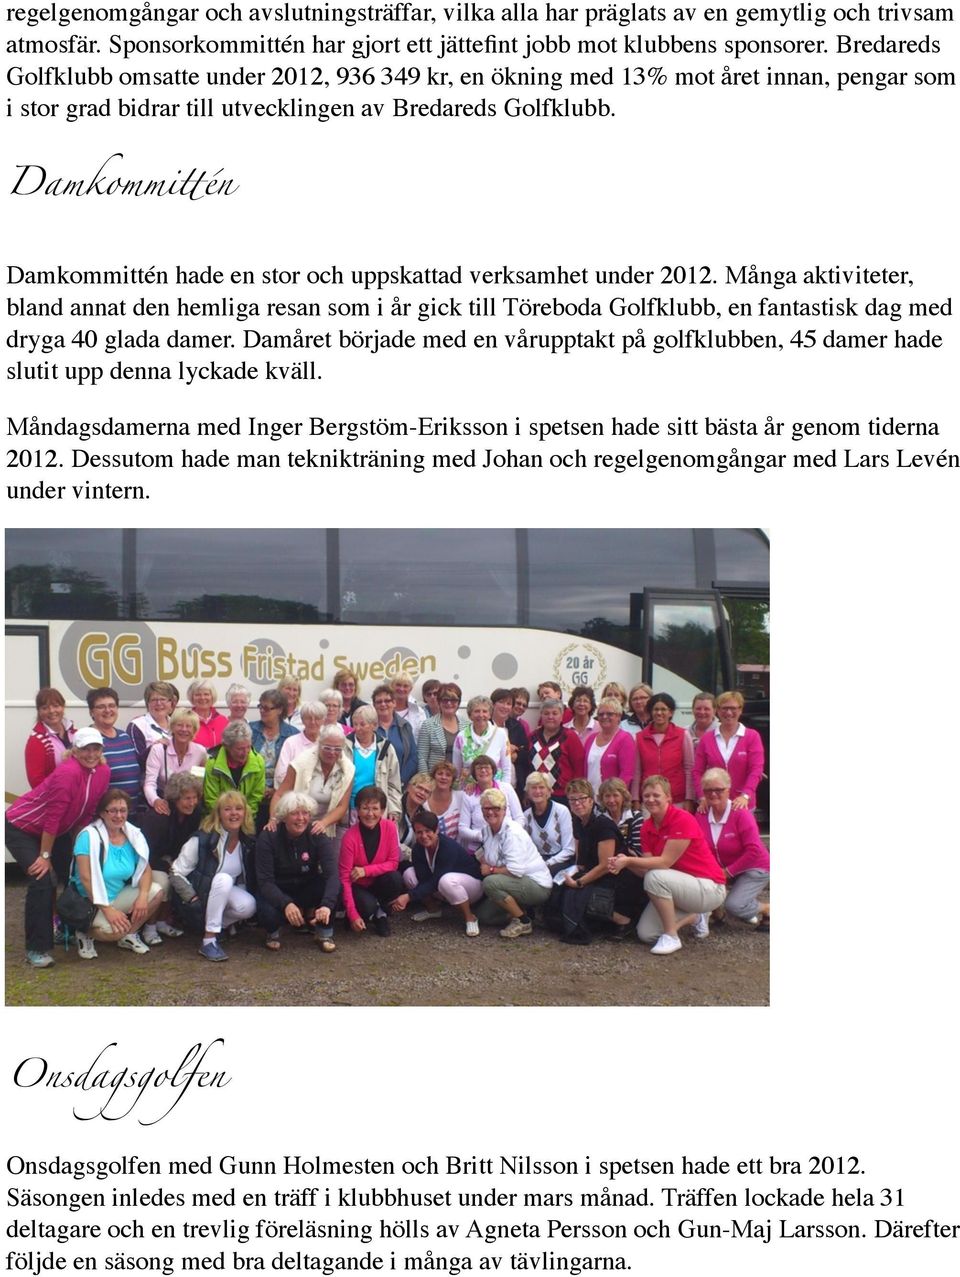 én Damkommittén hade en stor och uppskattad verksamhet under 2012. Många aktiviteter, bland annat den hemliga resan som i år gick till Töreboda Golfklubb, en fantastisk dag med dryga 40 glada damer.